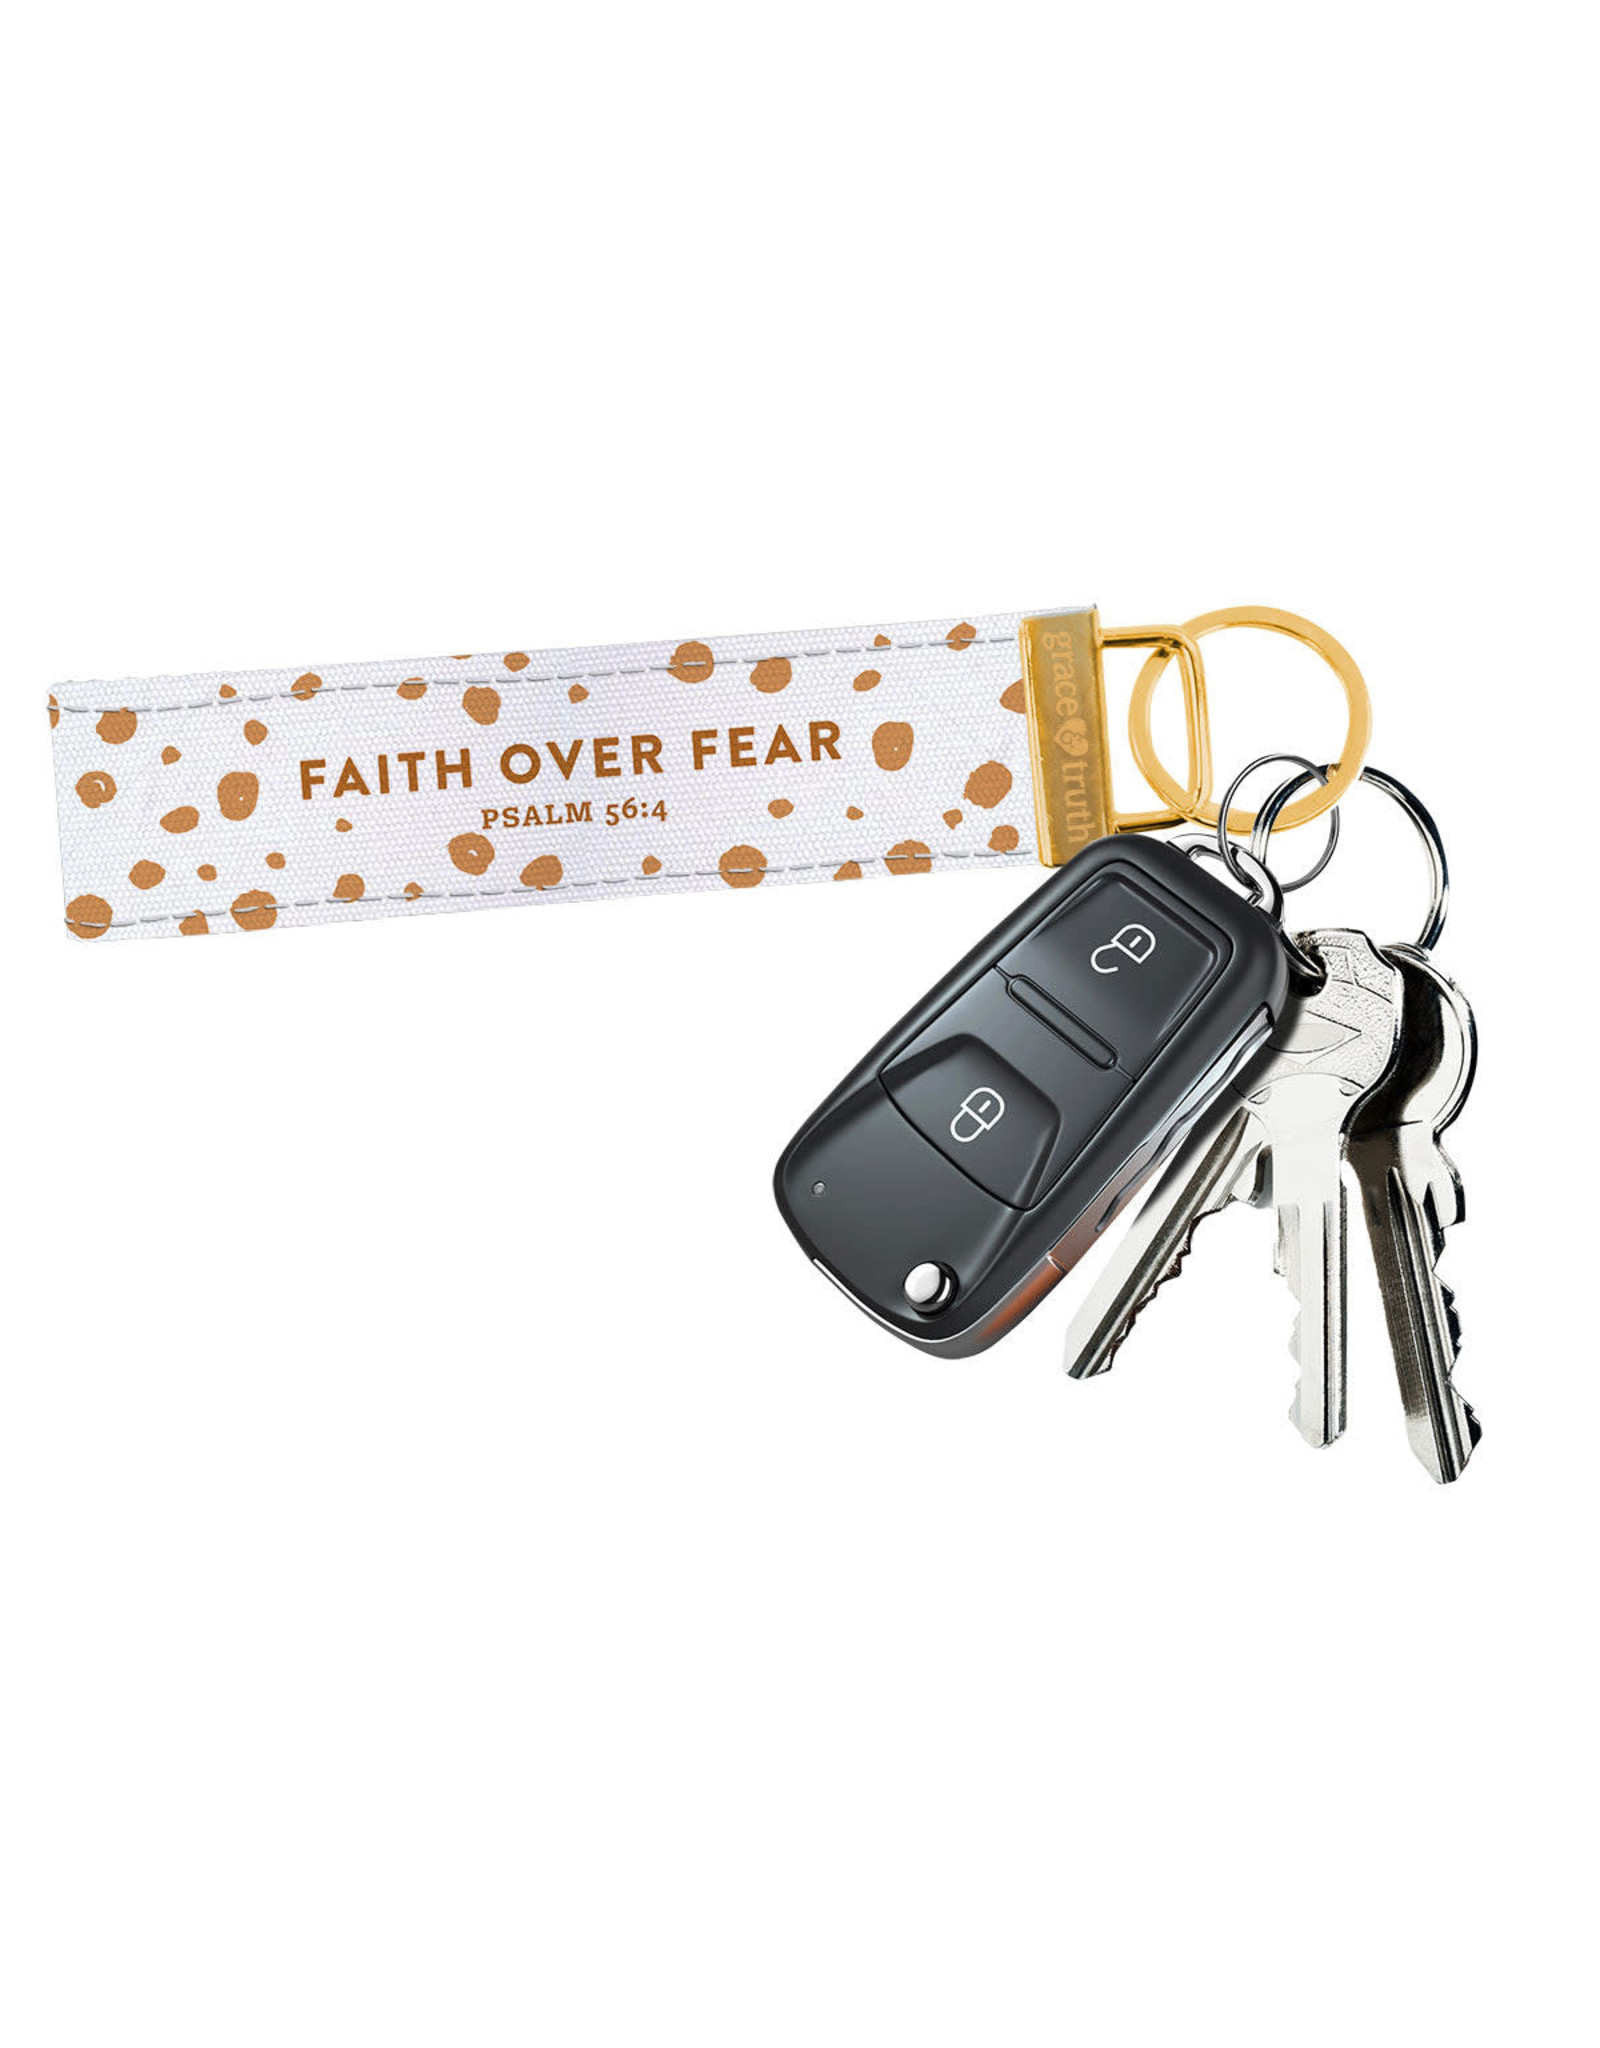 Grace & Truth Keychain Wristlet - Faith over Fear (Psalm 56:4)